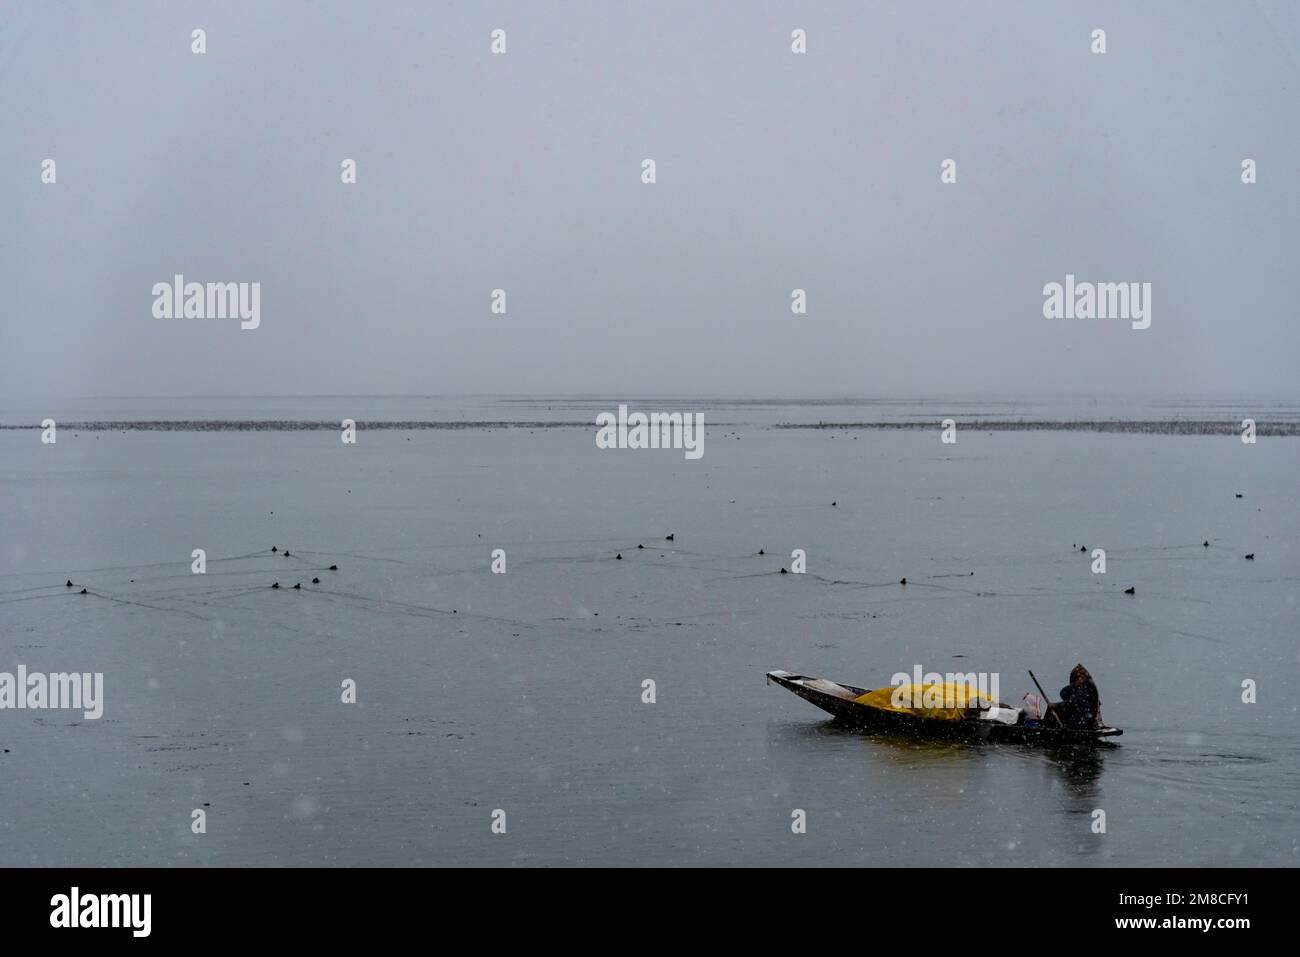 Un uomo rema la sua barca sul lago dal in mezzo a nevicate. Il Kashmir ha ricevuto nevicate fresche, con le cali più alte della valle che hanno ricevuto nevicate da moderate a pesanti e nevicate da leggere a moderate in pianura, causando una visibilità distruttiva. Questo ha influito sulle operazioni di volo insieme alla chiusura dell'autostrada nazionale Srinagar-Jammu. Foto Stock